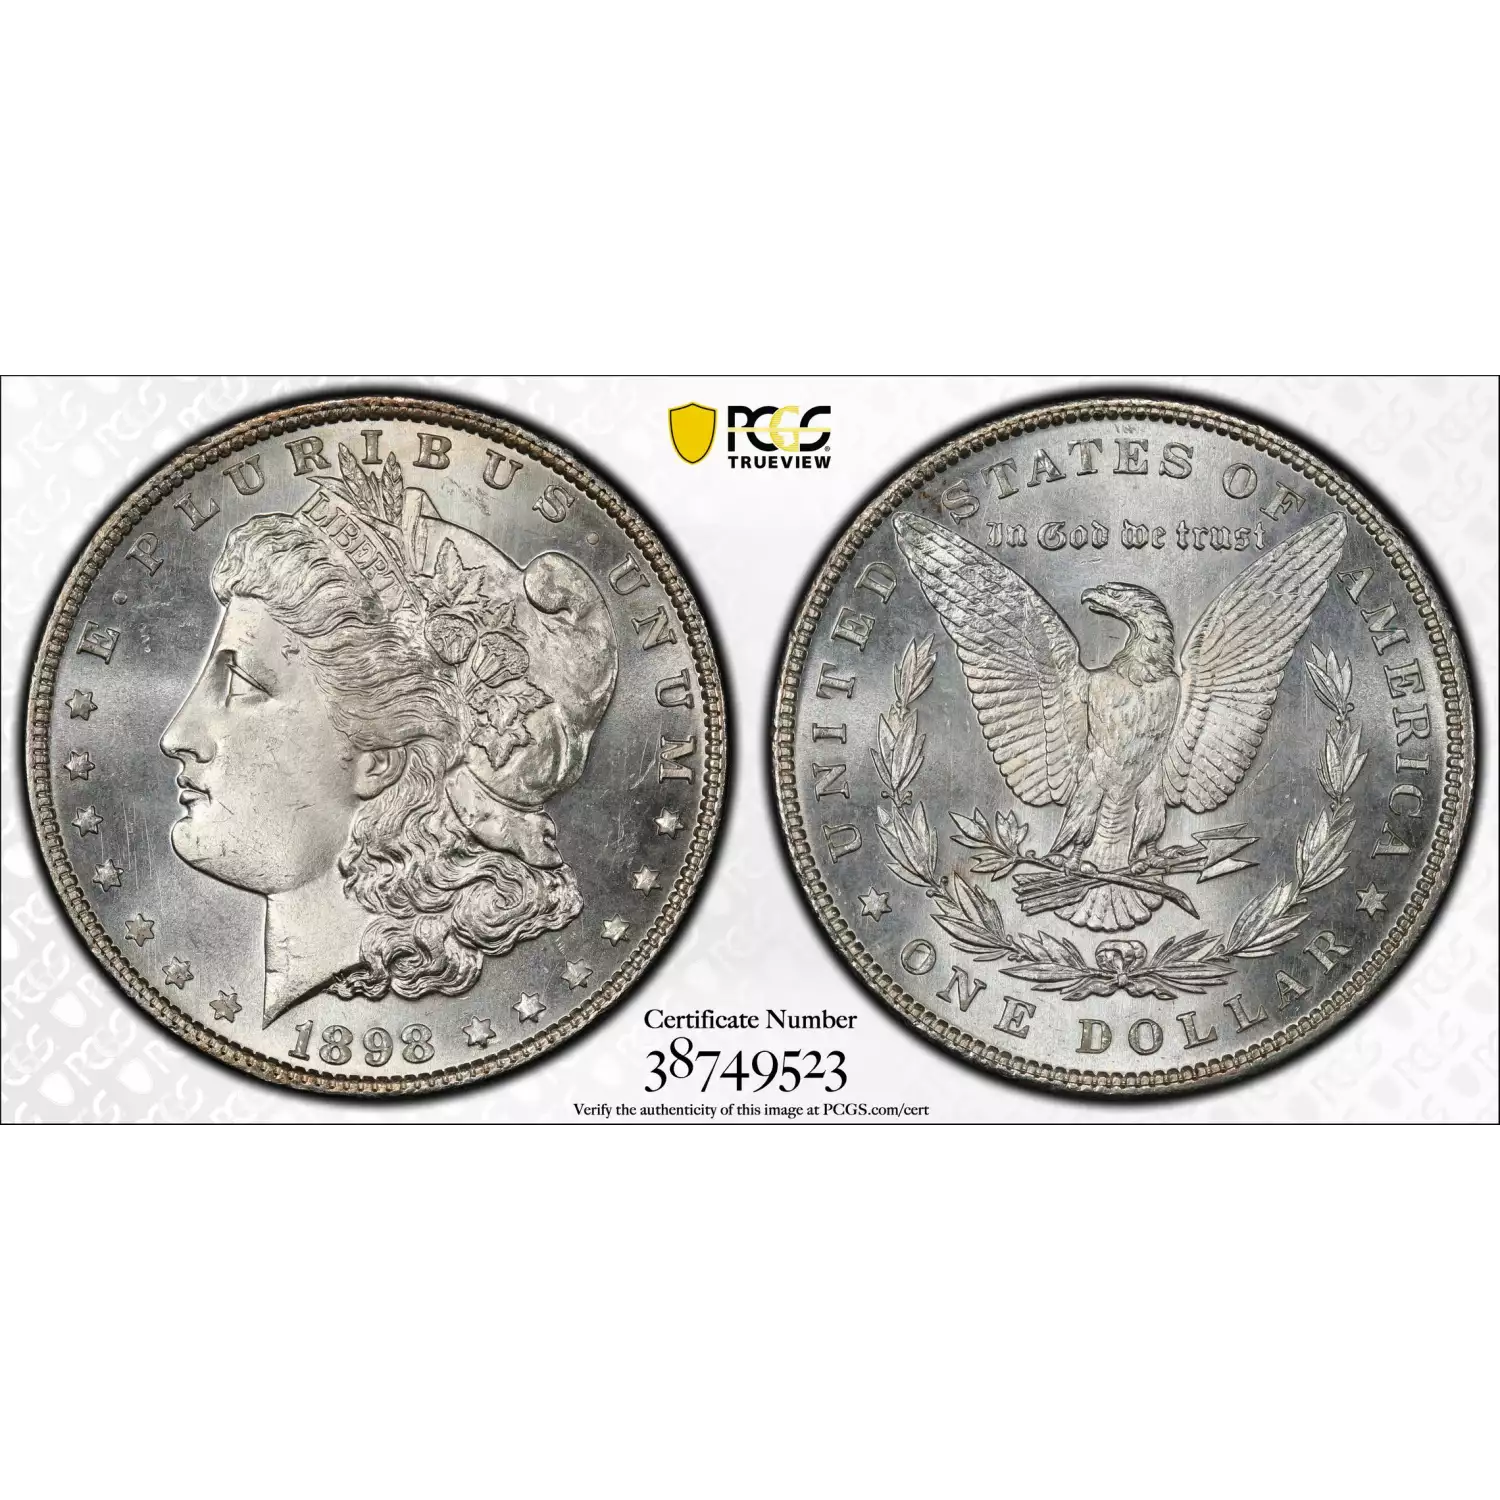 1898 $1